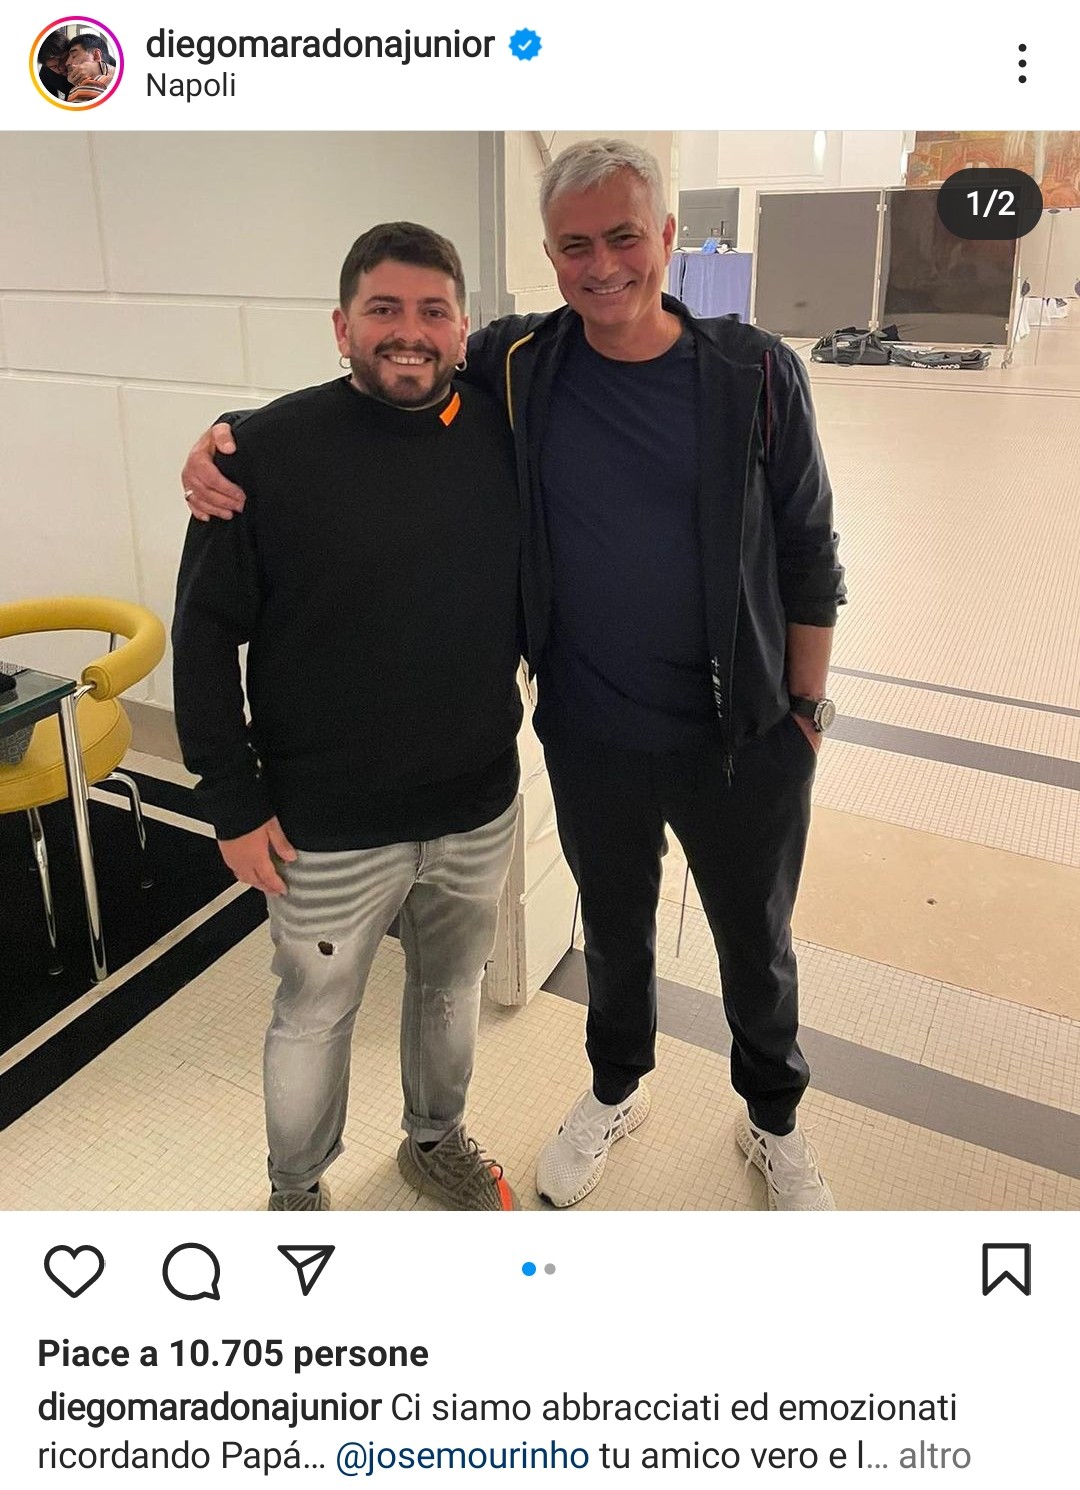 Diego Maradona jr incontra Mourinho a Napoli: “Tu amico vero di papà”